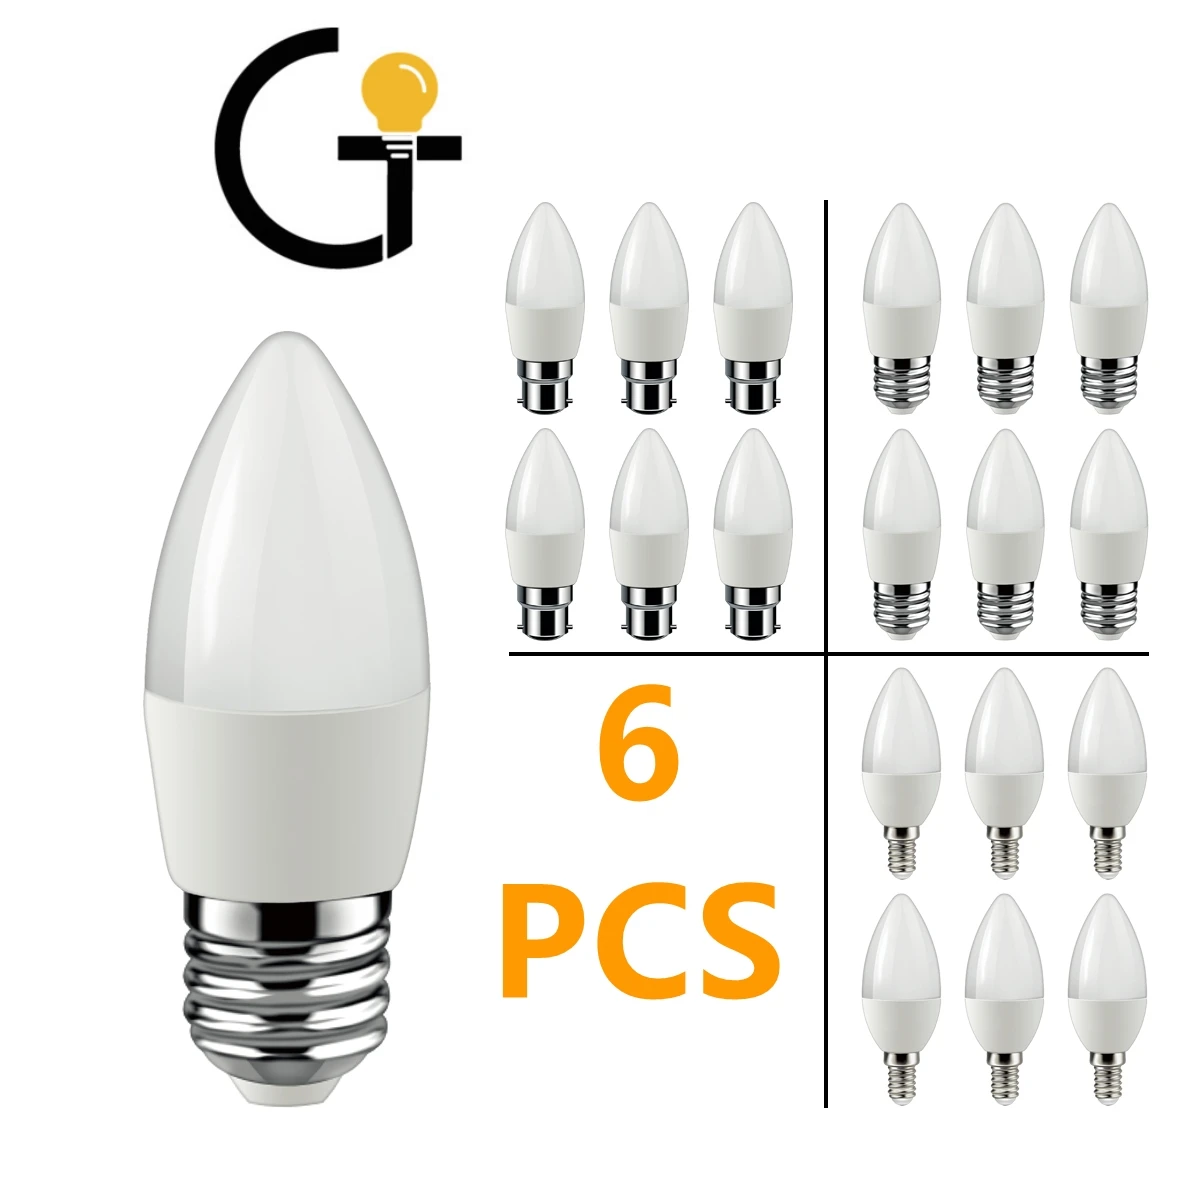 

6Pcs Led Bulb Lamps Candle min E14 E27 B22 3W 5W 6W 7W 3000k 4000k 6000k AC220v-240v Led Candle Bulb For Home Decoration Lamp